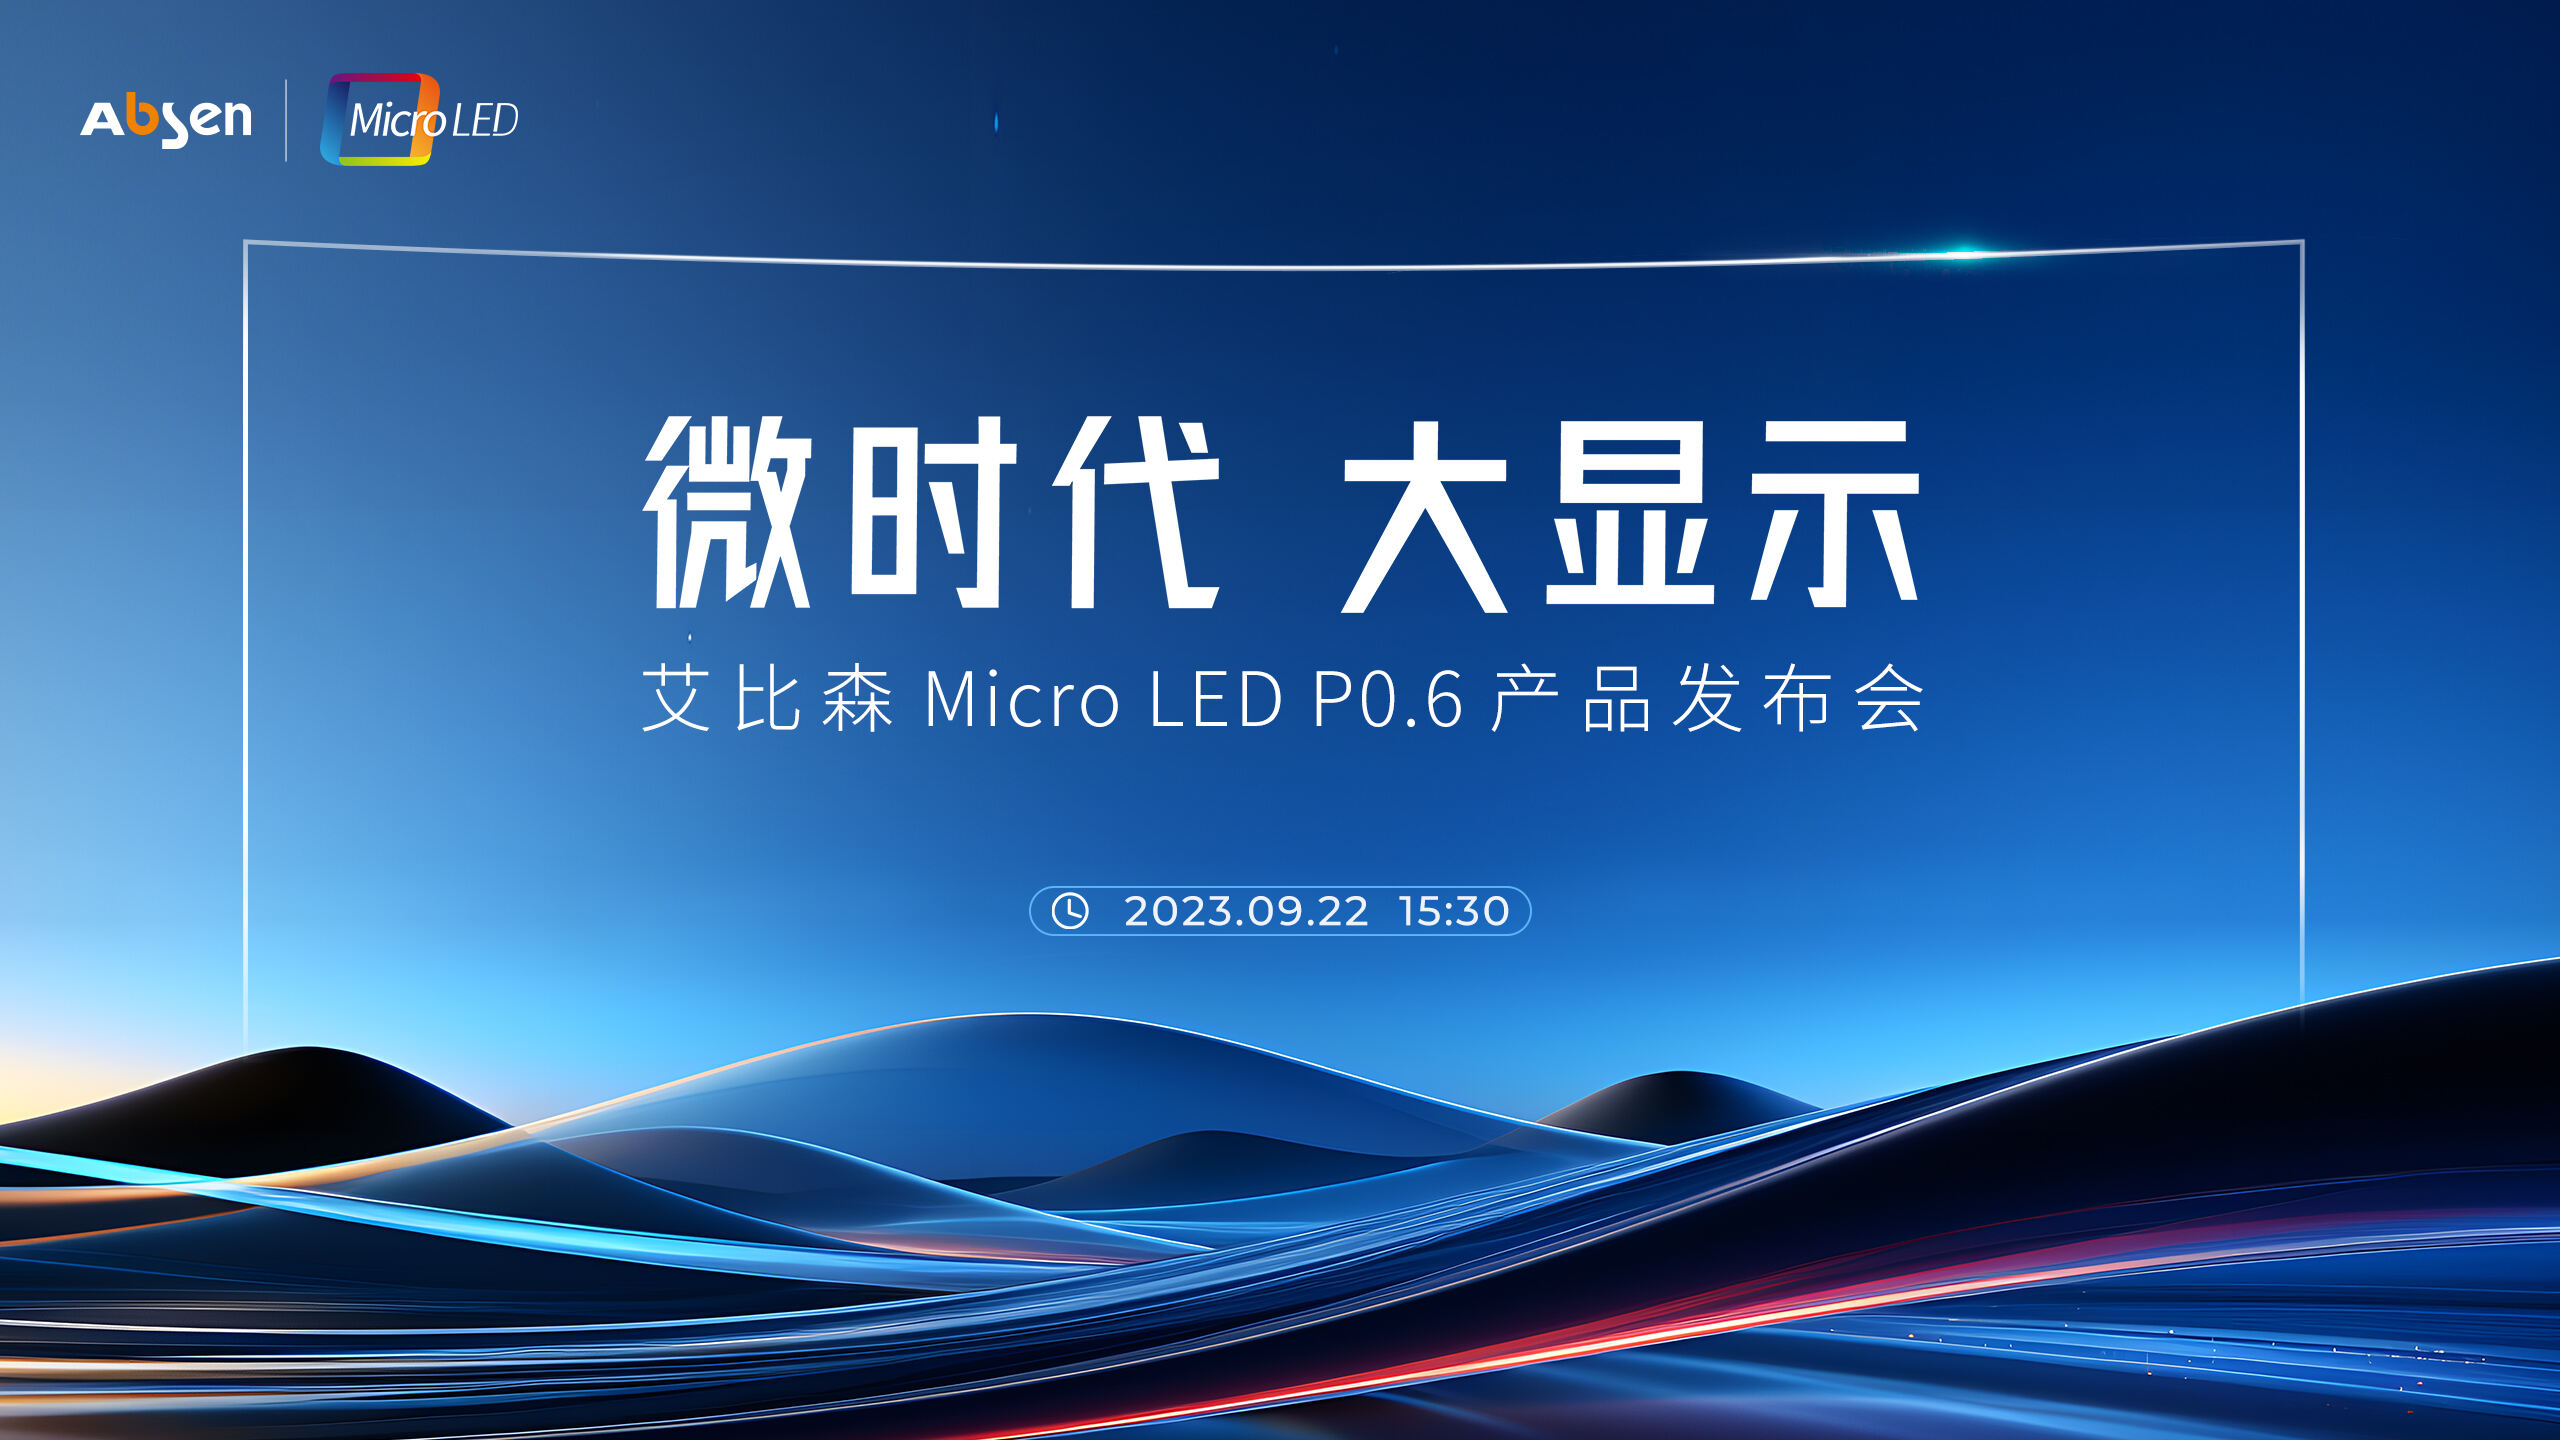 微时代 大显示丨多宝体育
 Micro LED P0.6 产品重磅发布